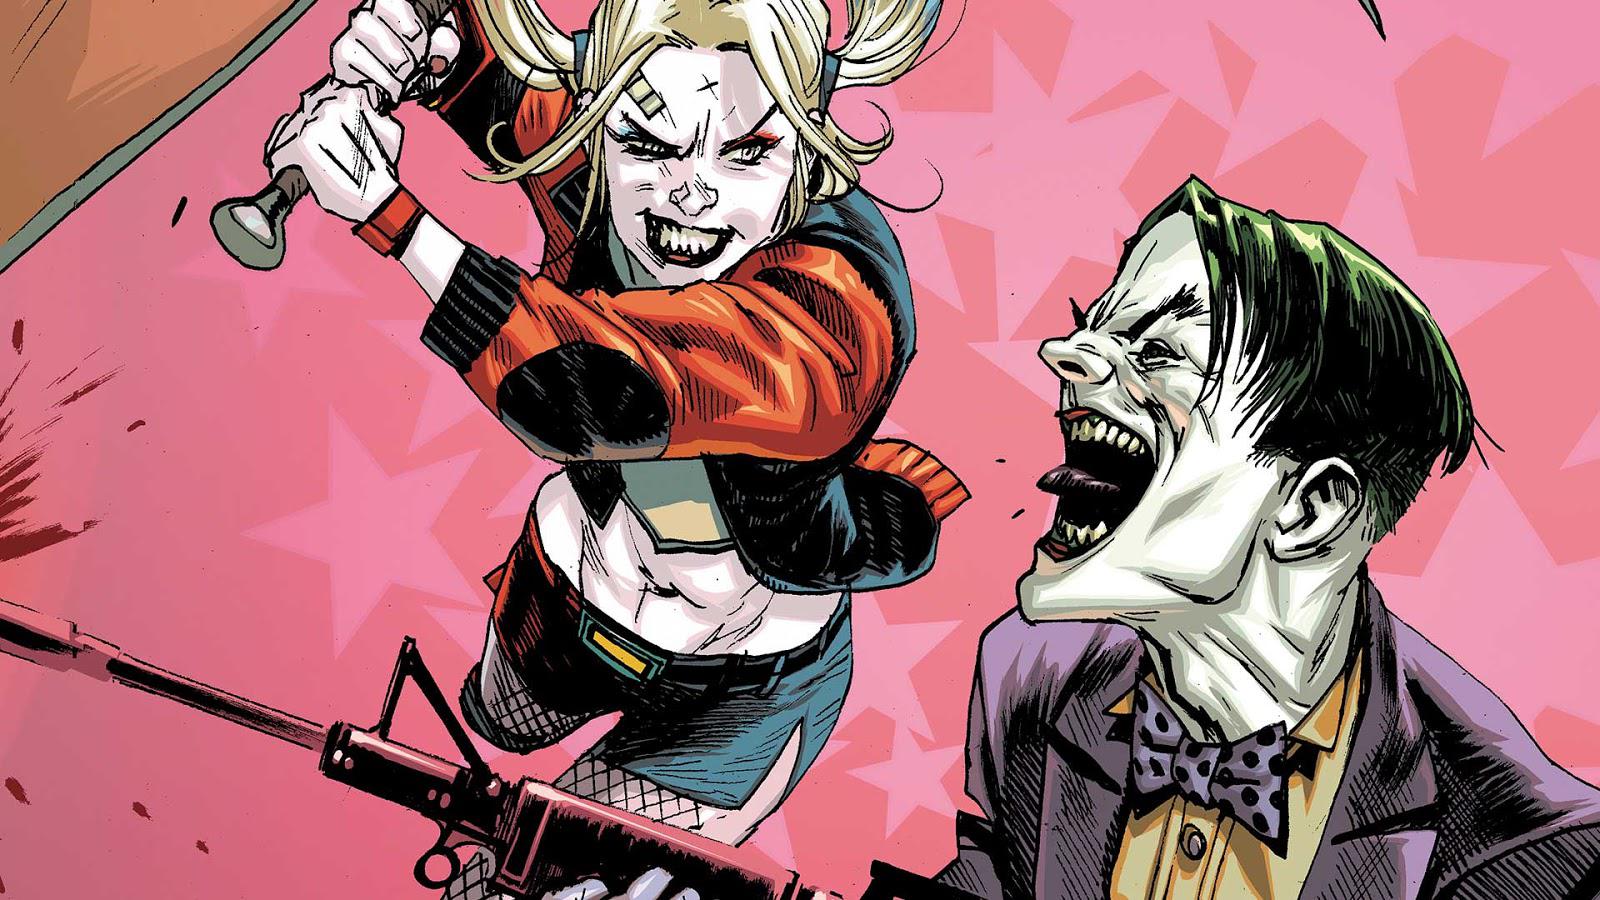 Harley vs Joker